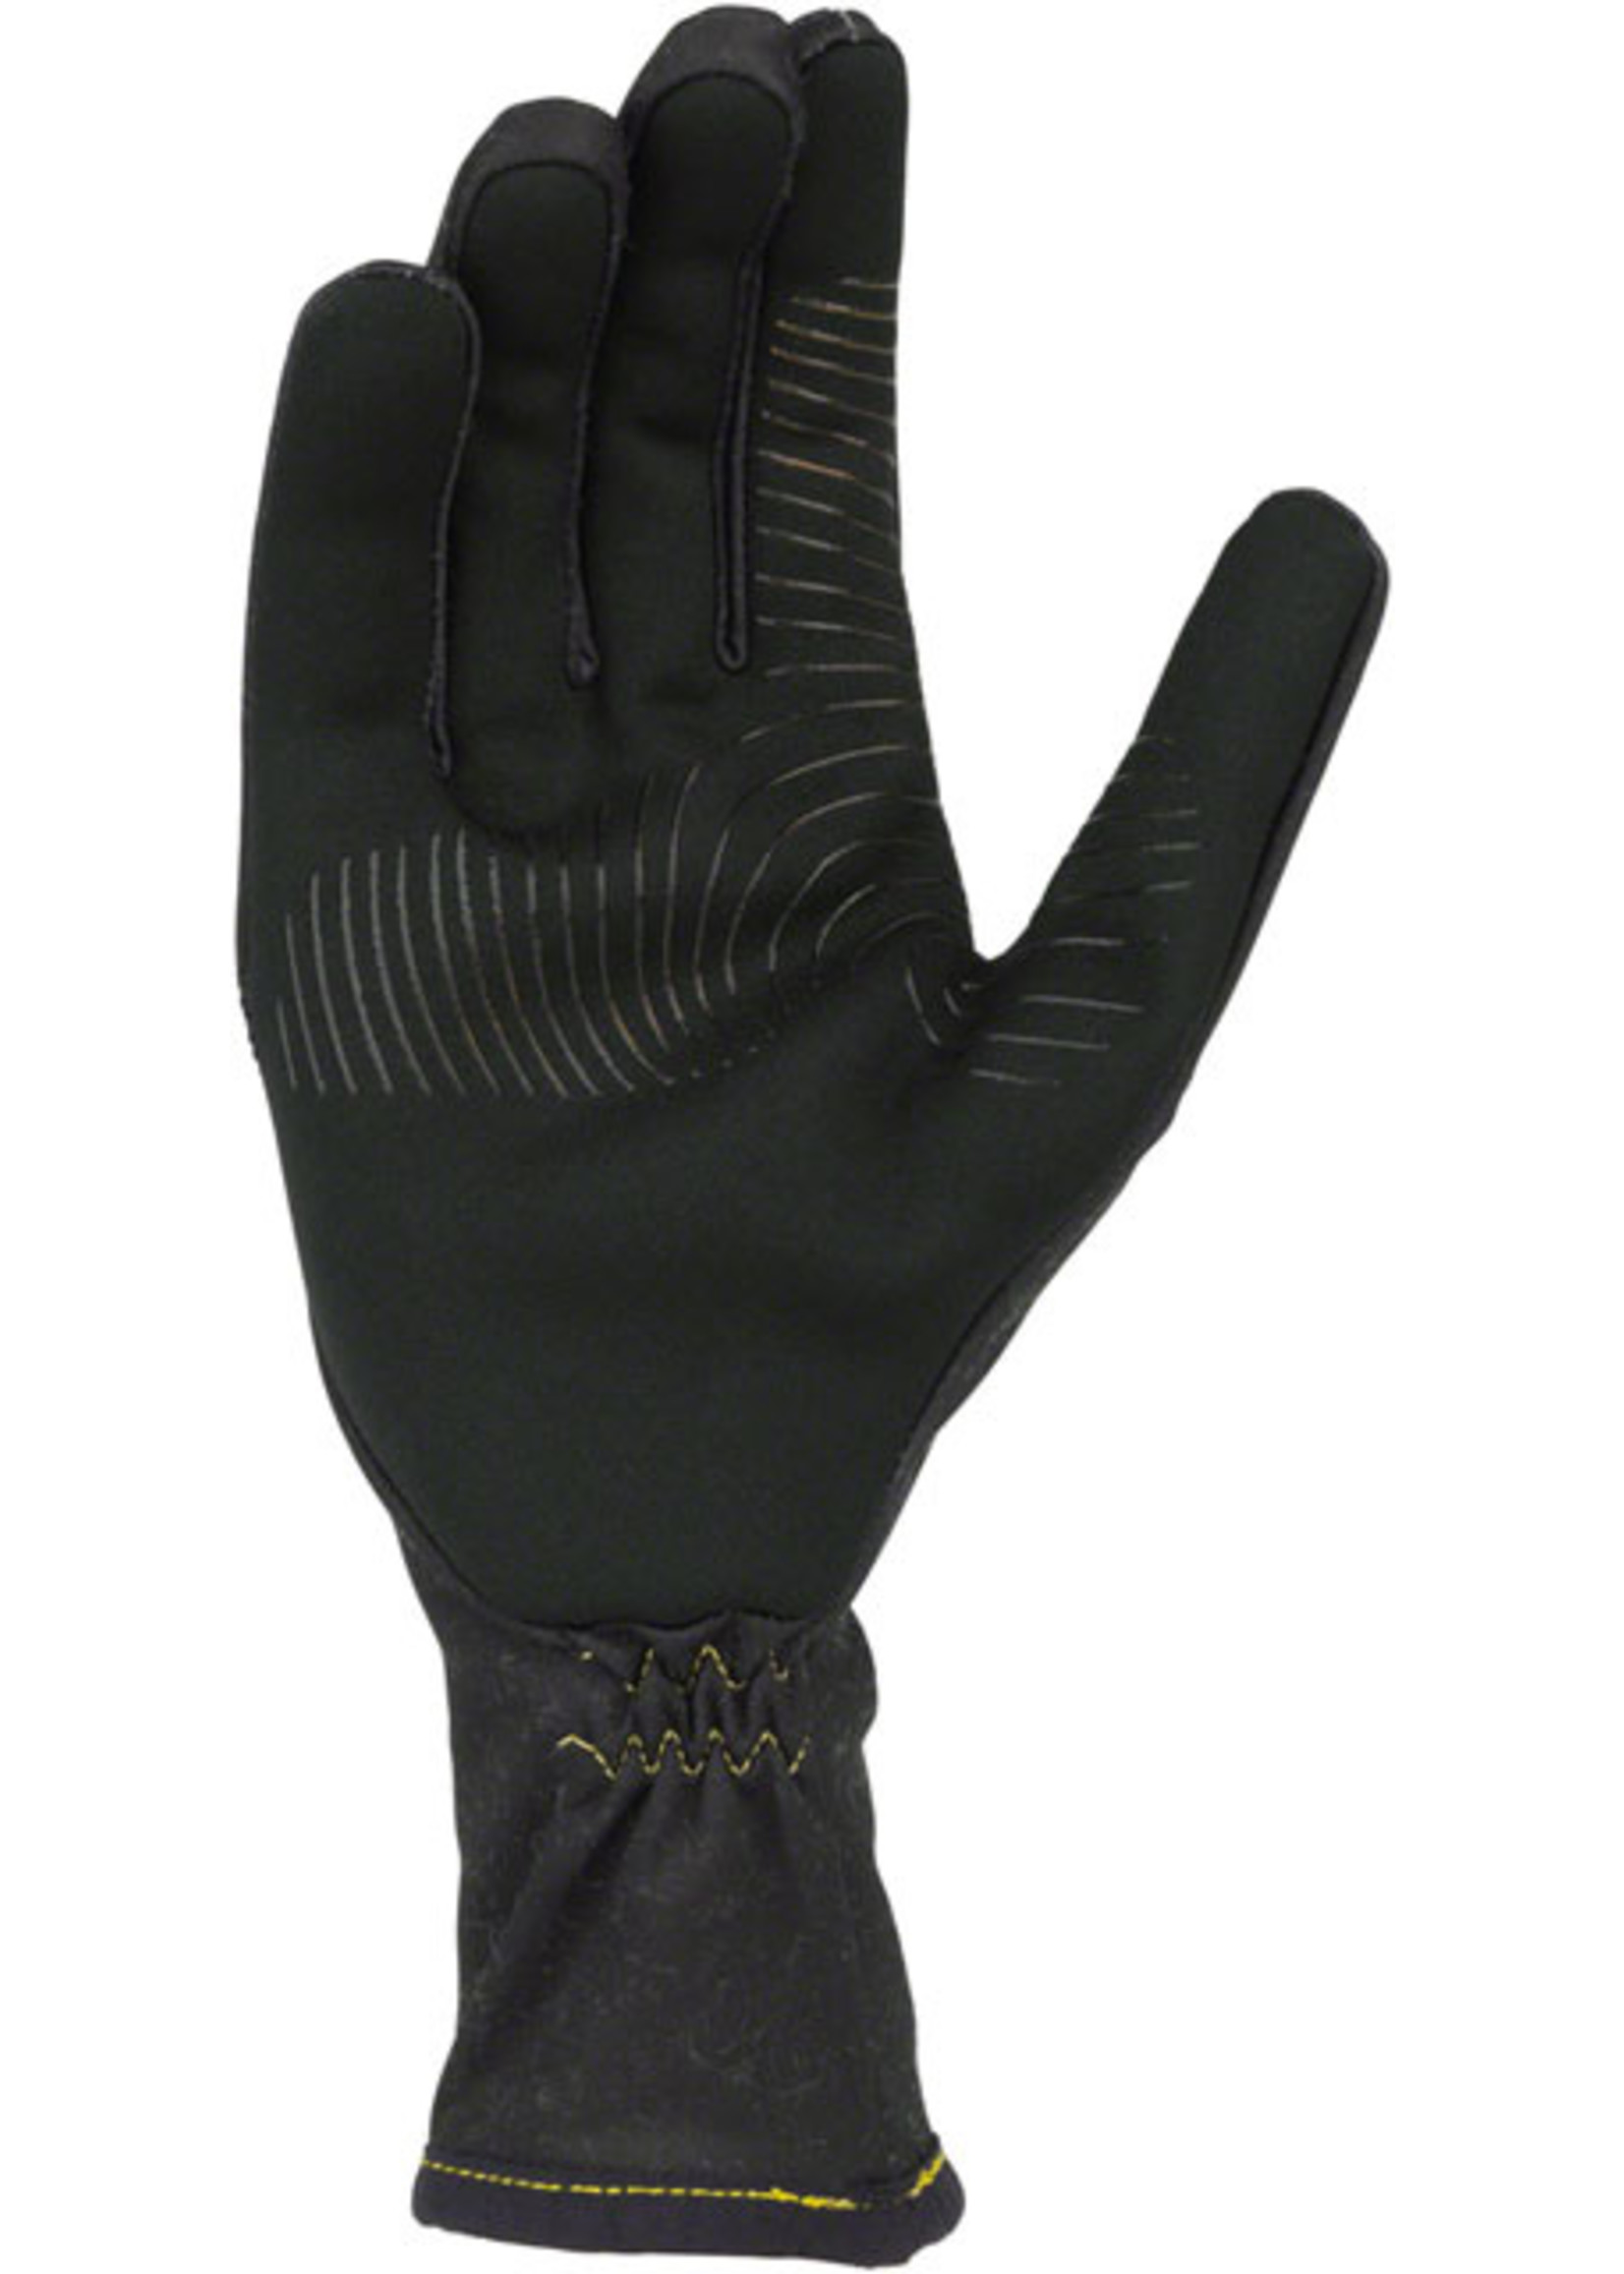 45NRTH 45NRTH Risor Merino Liner Gloves - Black Full Finger Large